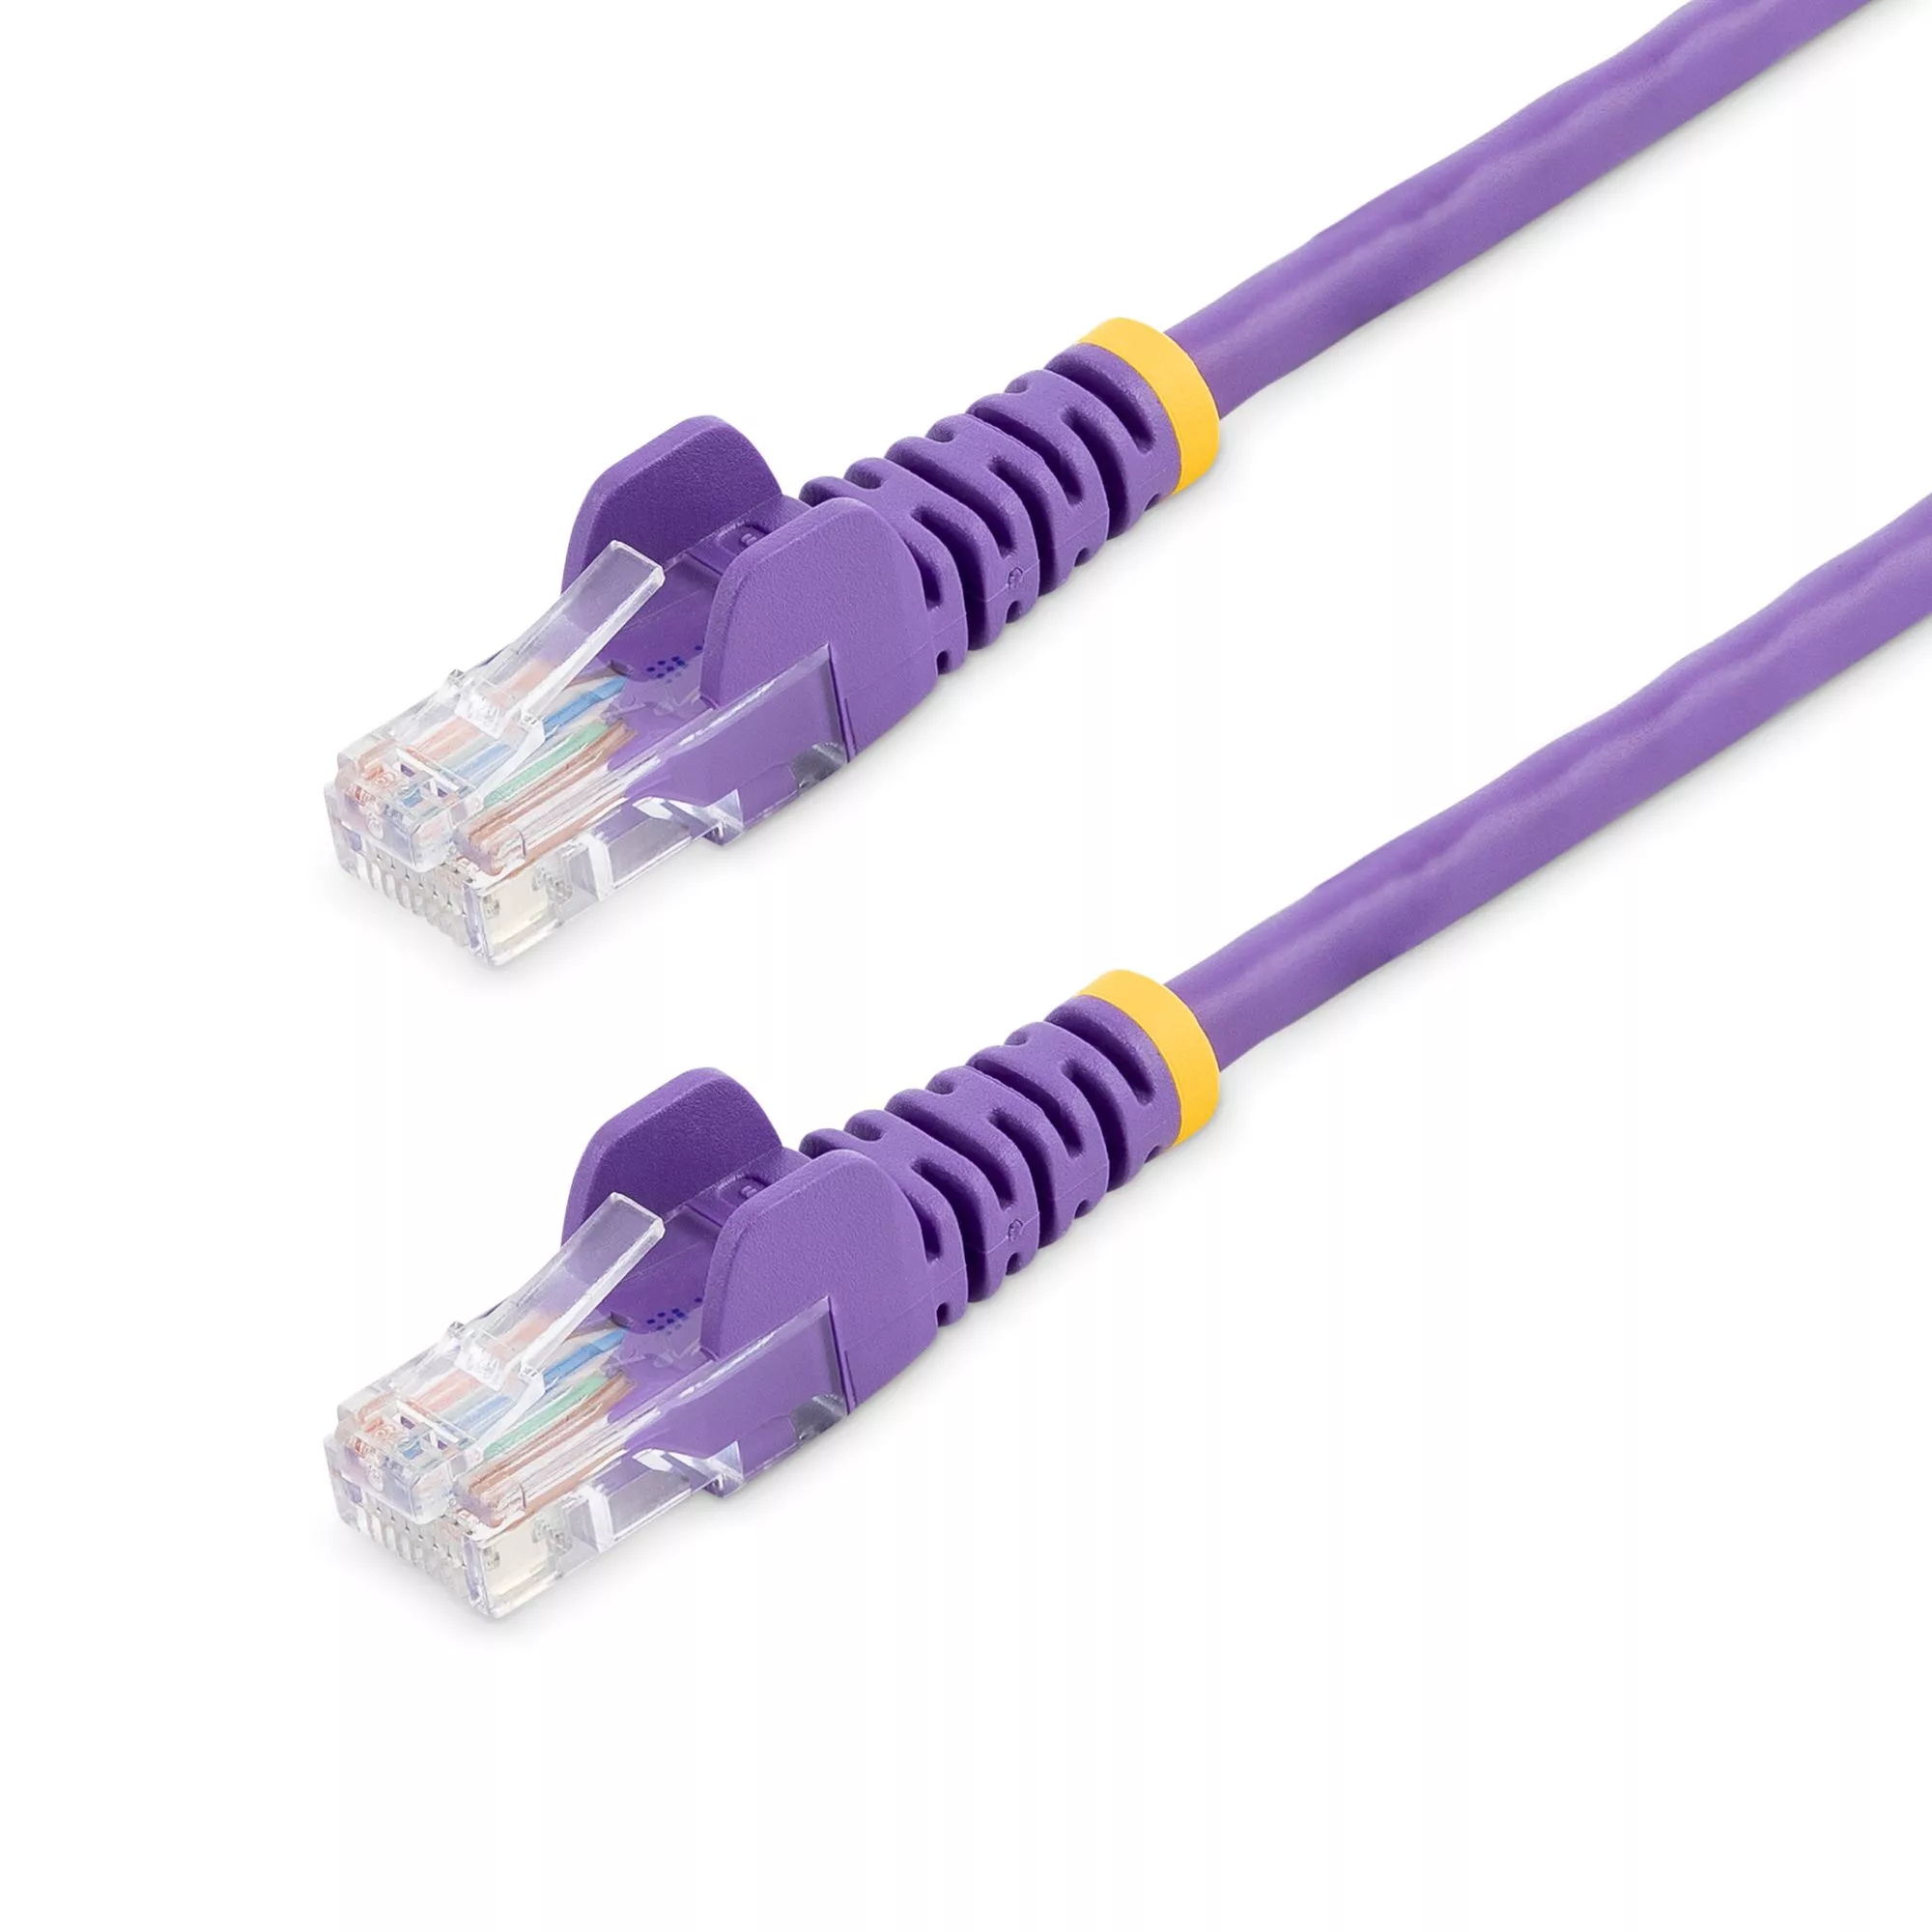 Revendeur officiel StarTech.com Câble réseau Cat5e sans crochet de 10 m